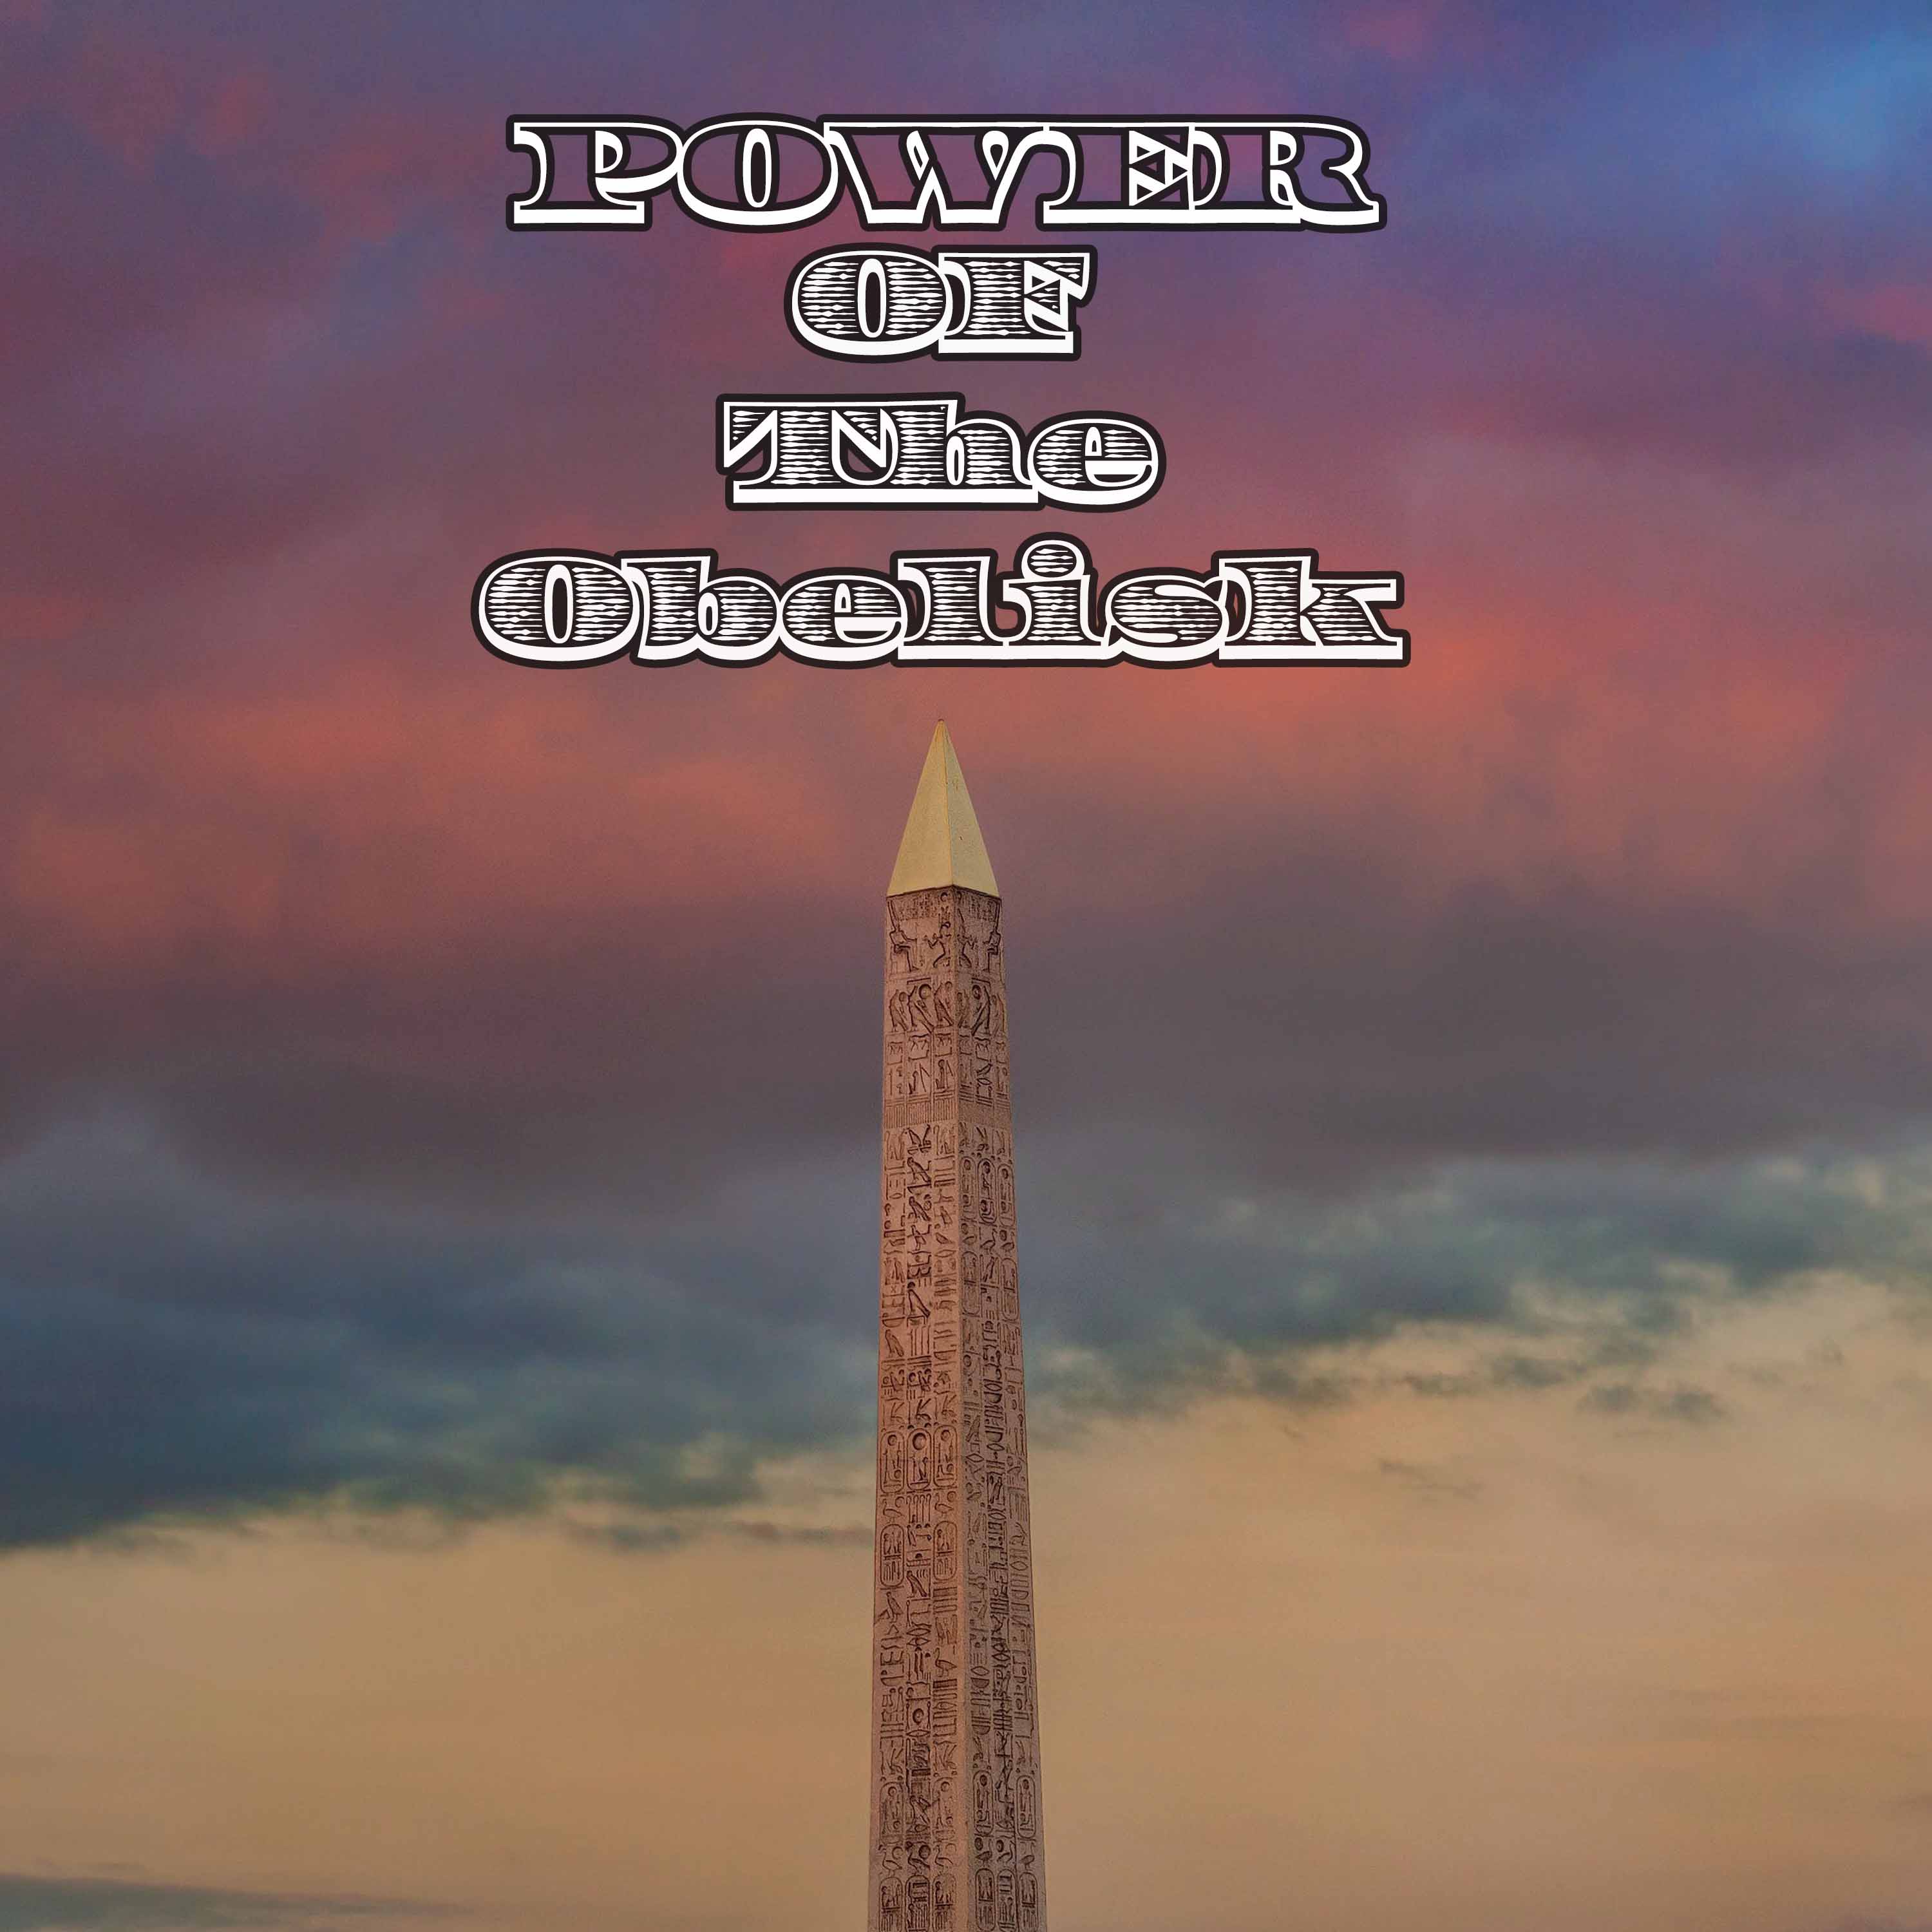 Power of the Obelisk